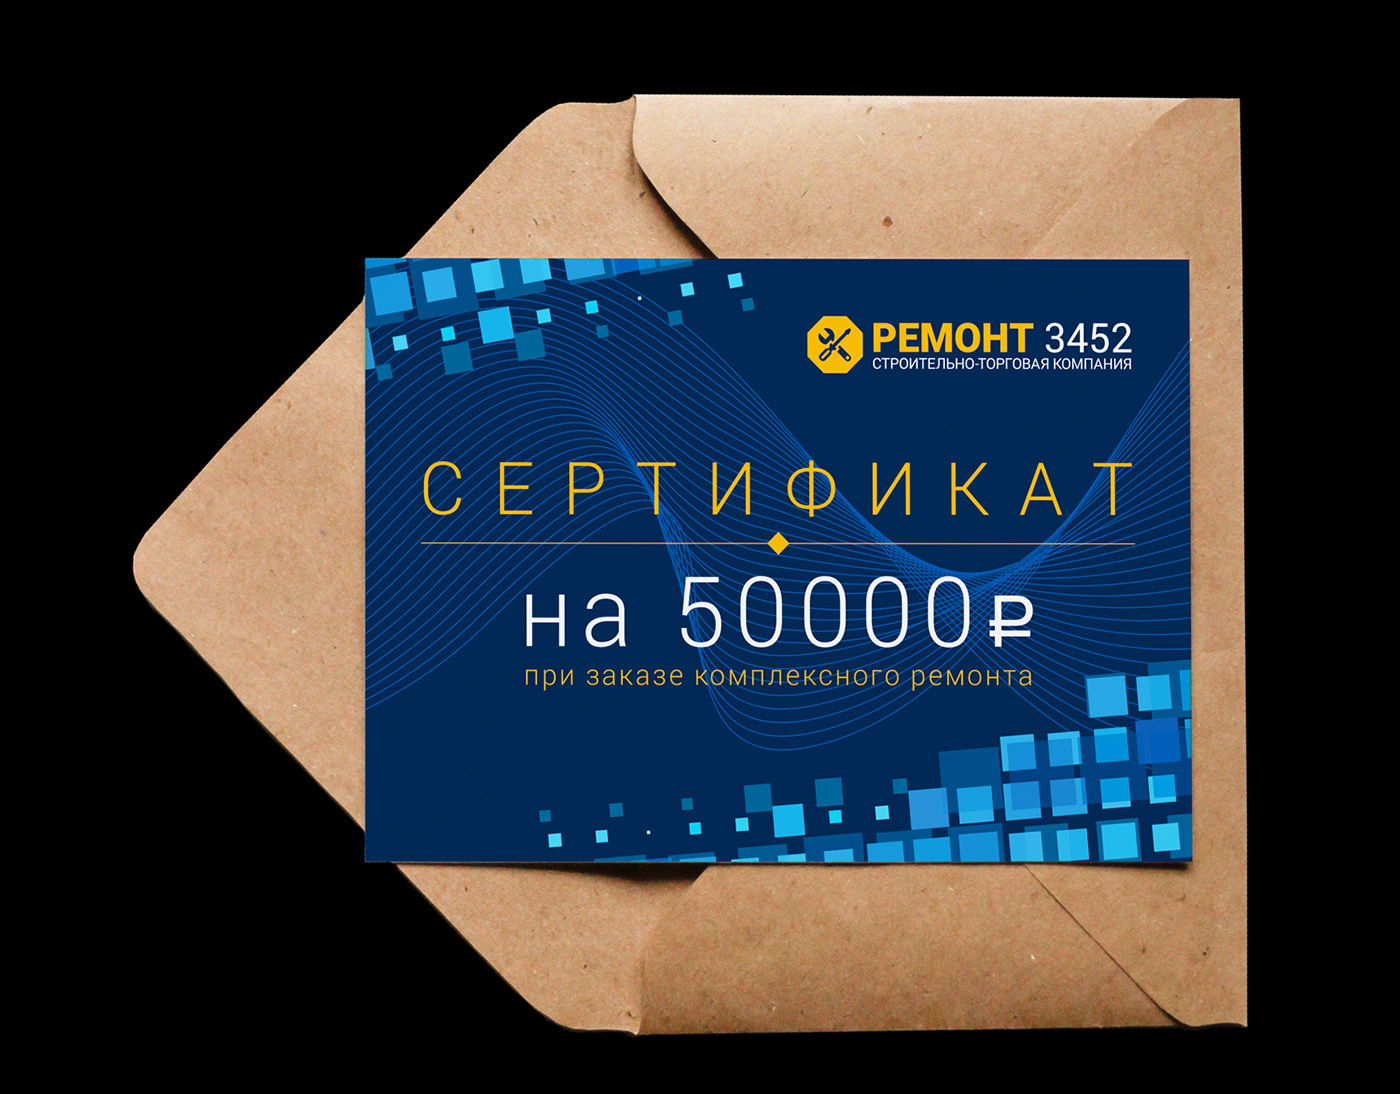 Печать подарочных сертификатов, цена печати в Москве